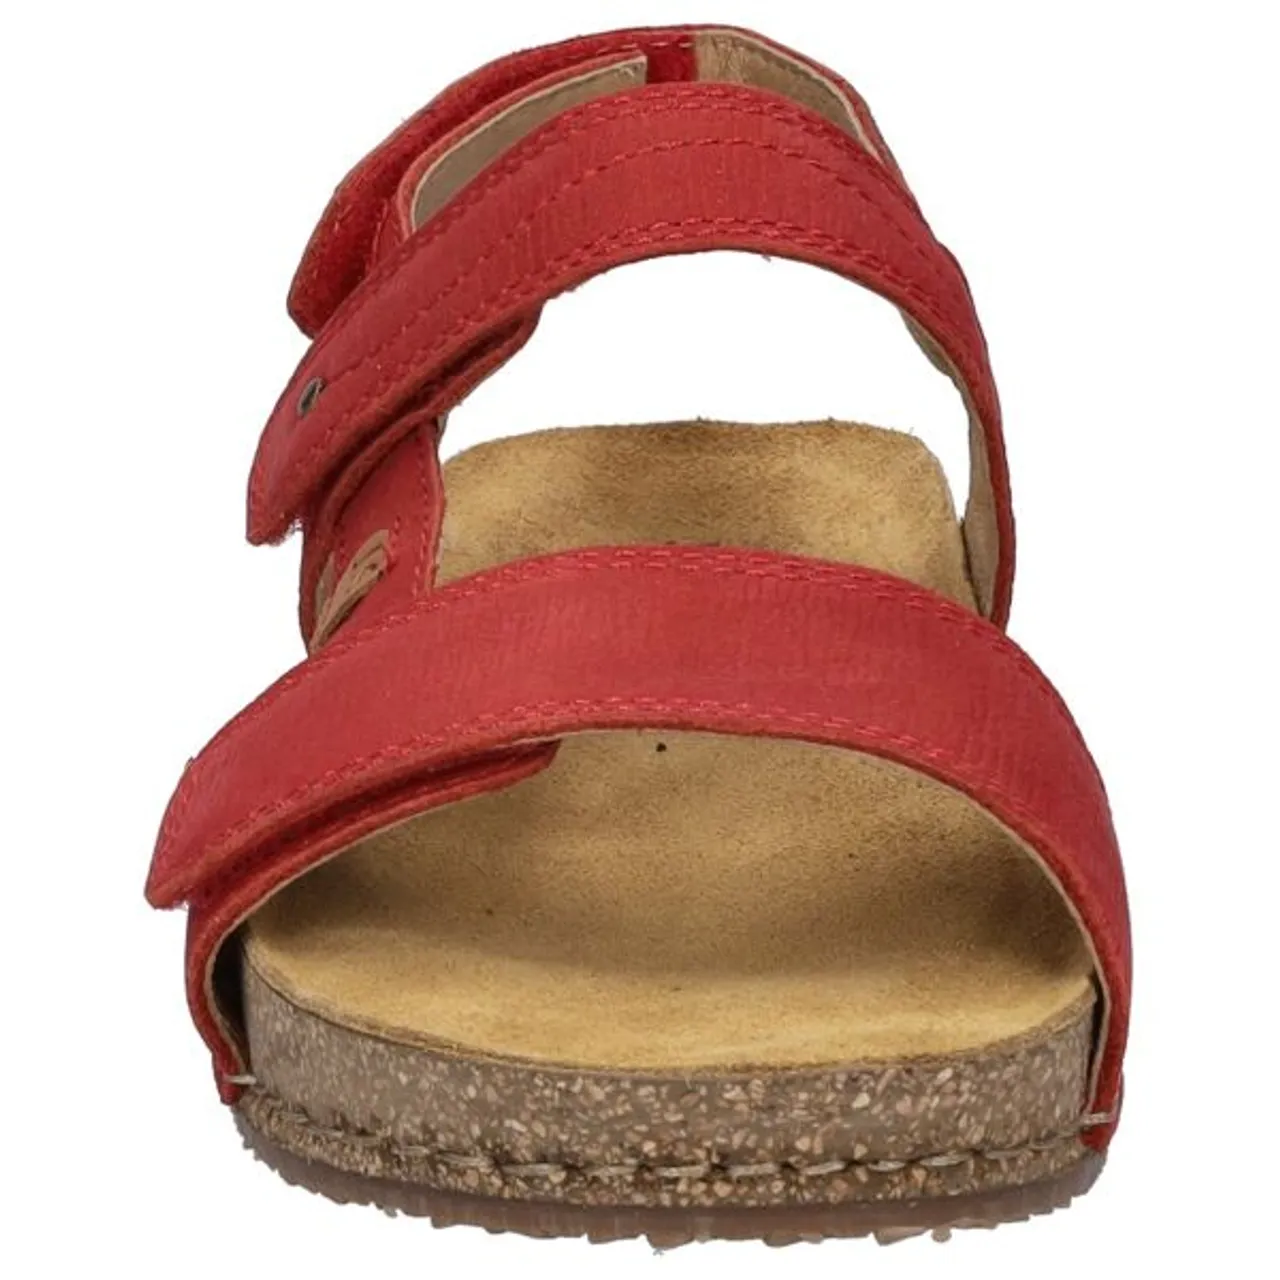 Sandale JOSEF SEIBEL "Hannah" Gr. 38, rot Damen Schuhe Sandalen Sommerschuh, Sandalette, Klettschuh, mit praktischem Klettverschluss